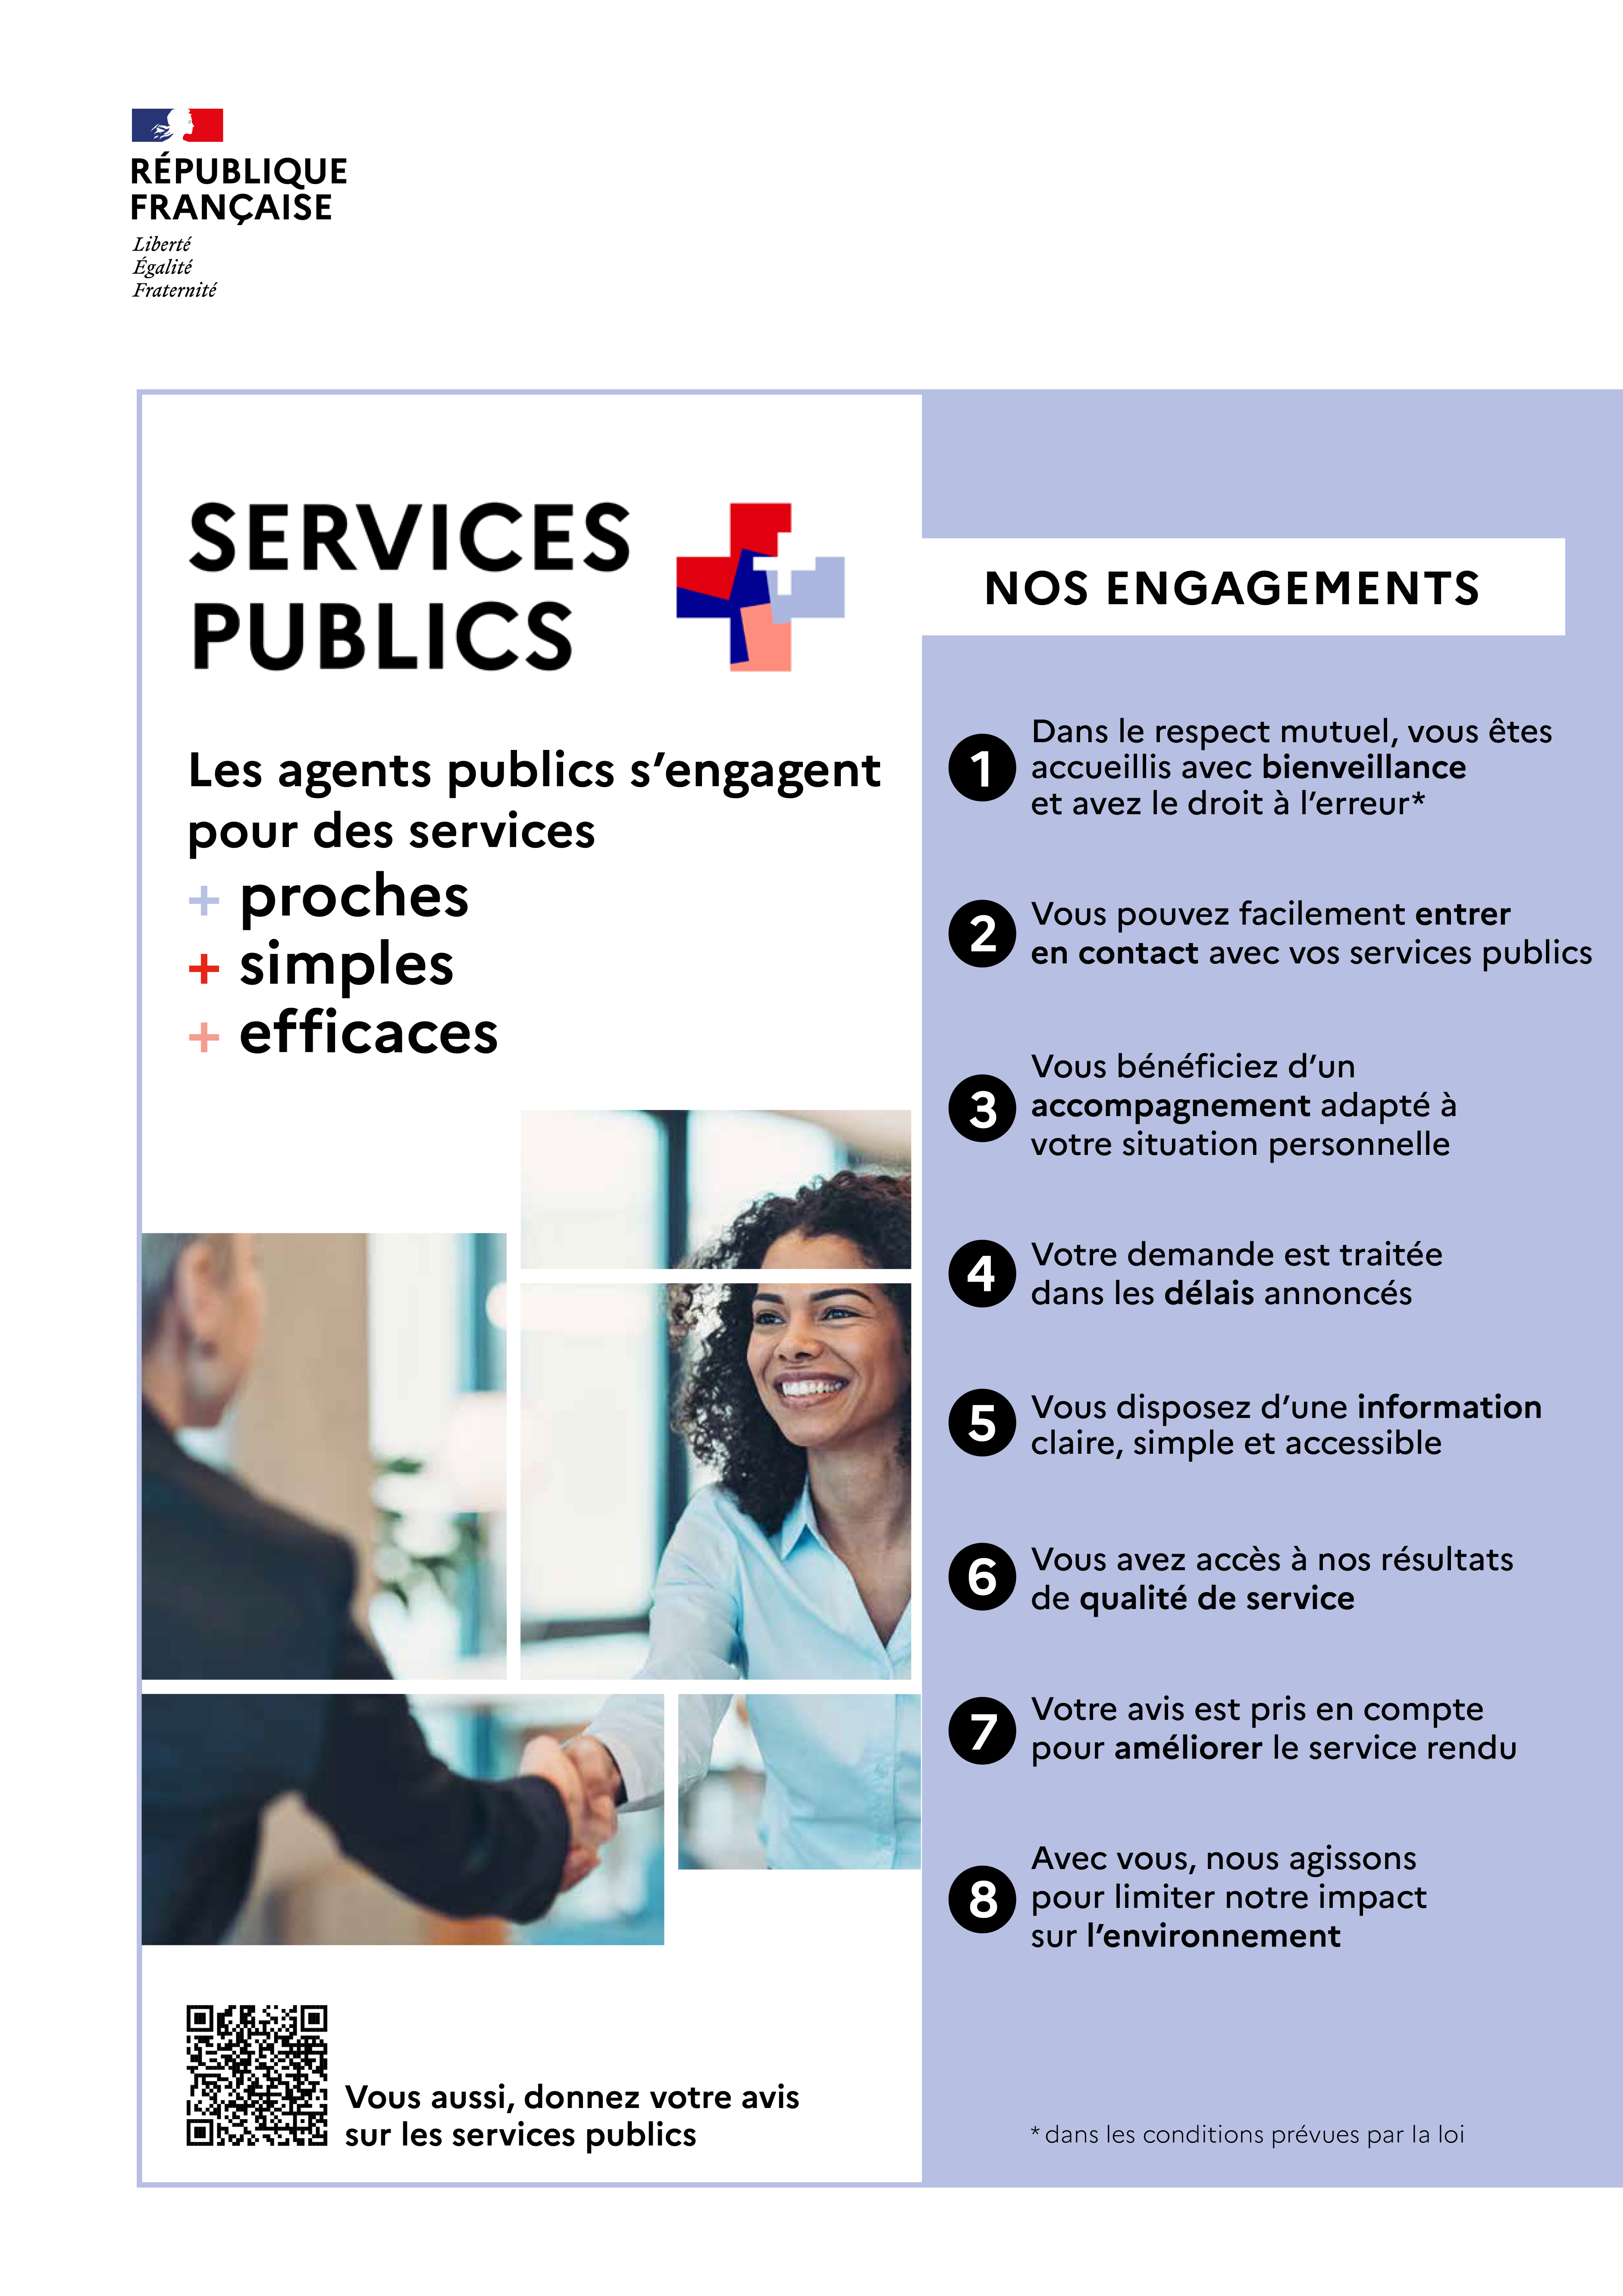 Découvrez les nouveaux engagements du service public